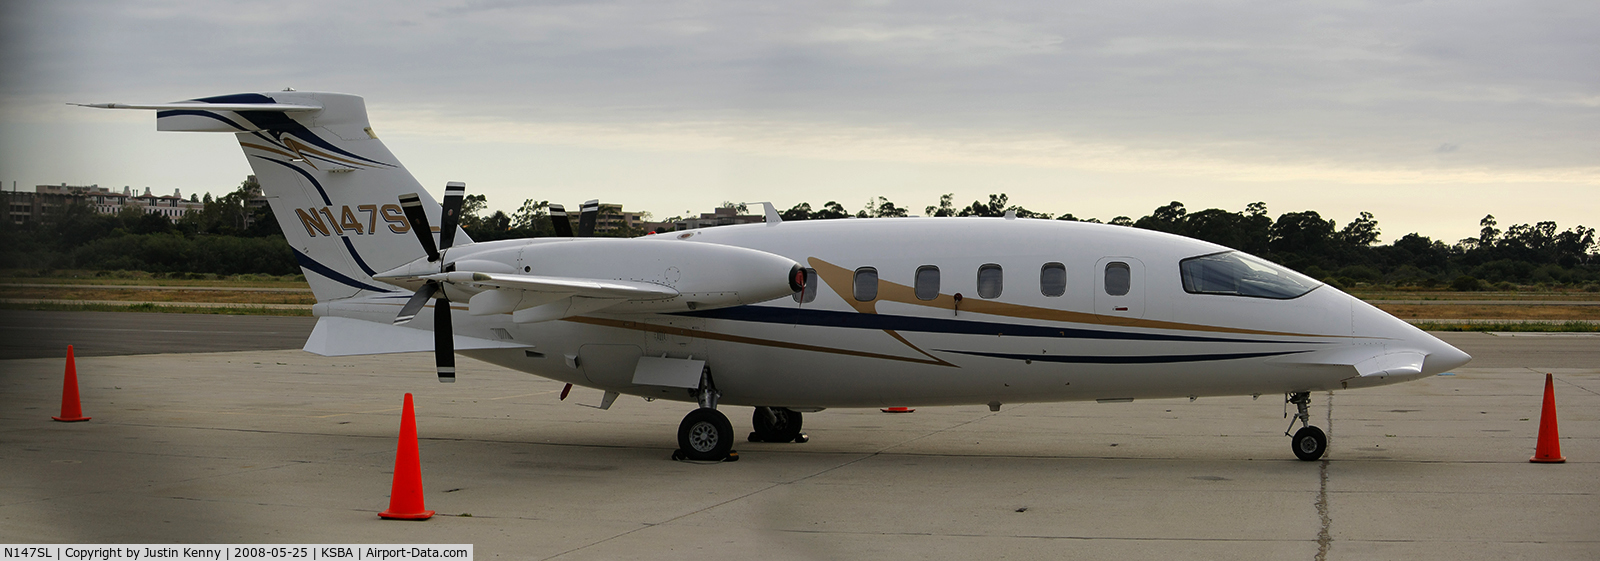 N147SL, 2004 Piaggio P-180 C/N 1083, N11547 Parked at Atlantic Aviation at KSBA